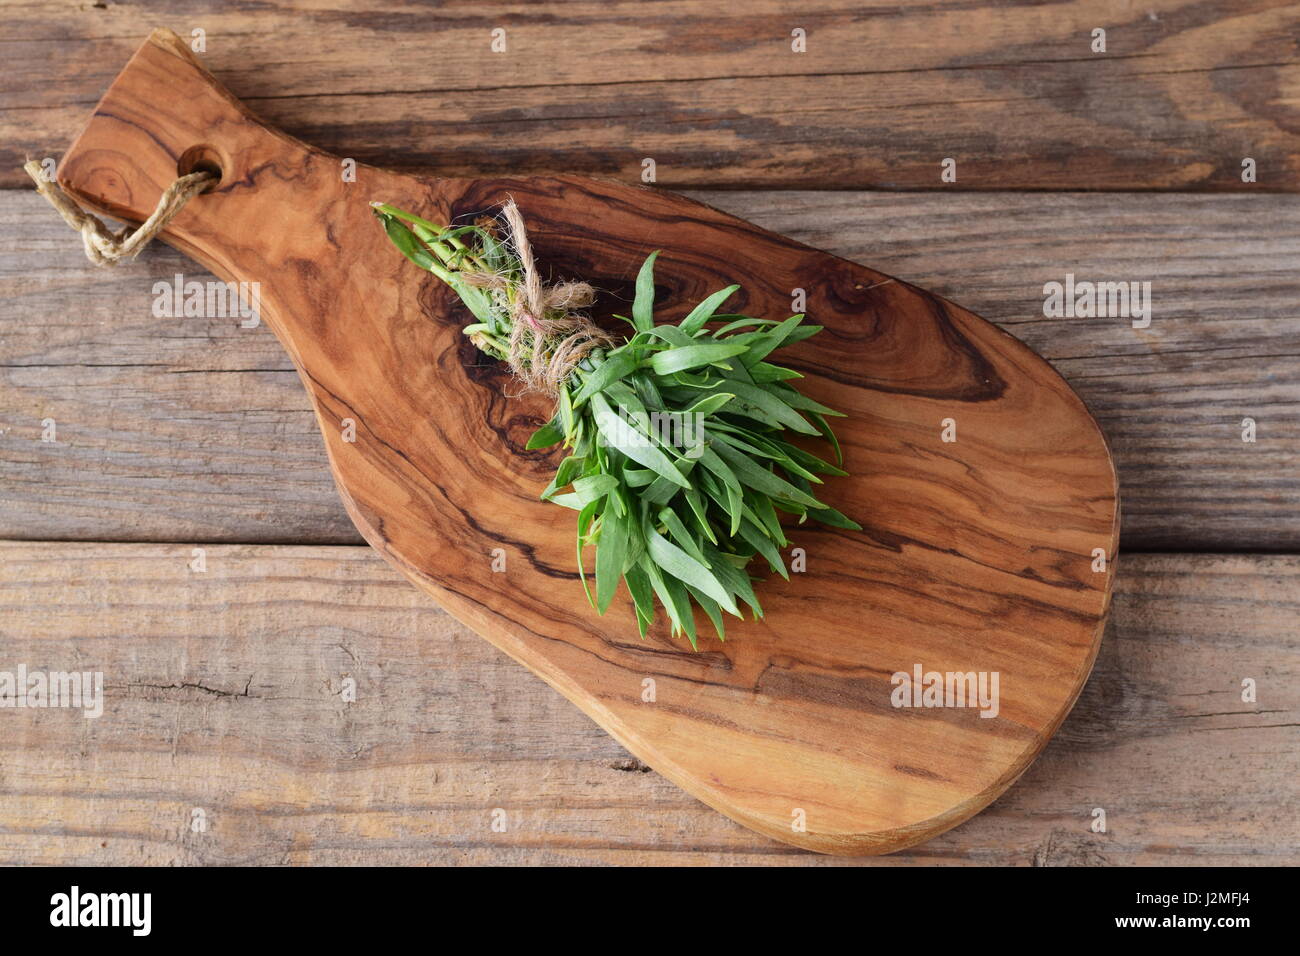 Un bouquet d'estragon frais sur une planche à découper en bois. Banque D'Images